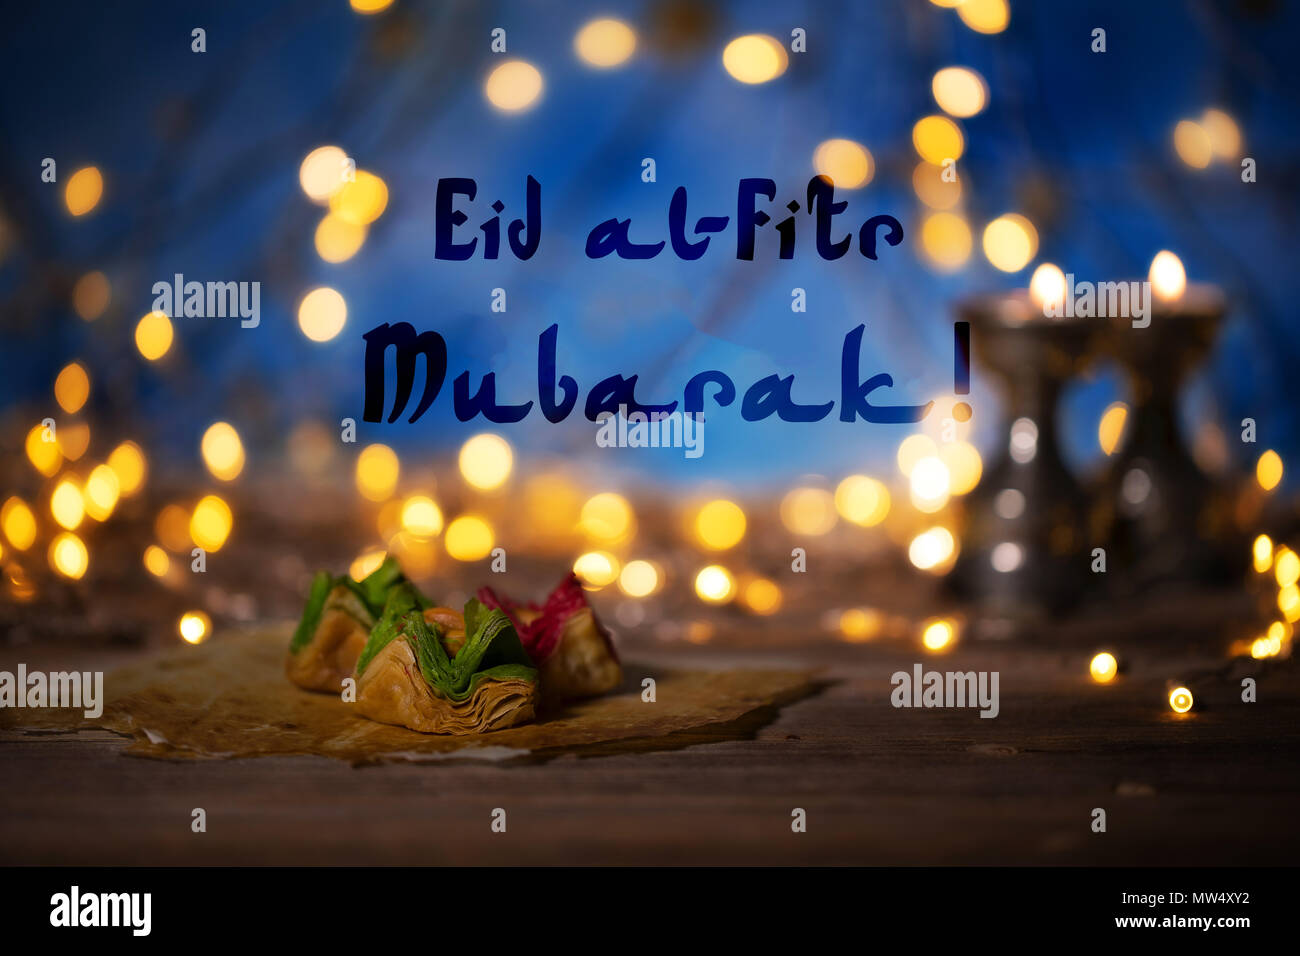 Gratulation: Eid Mubarak! Arabische Süßigkeiten auf einer hölzernen  Oberfläche. Kerzenständer, Nacht Licht und Nacht blauer Himmel mit Halbmond  im Hintergrund Stockfotografie - Alamy